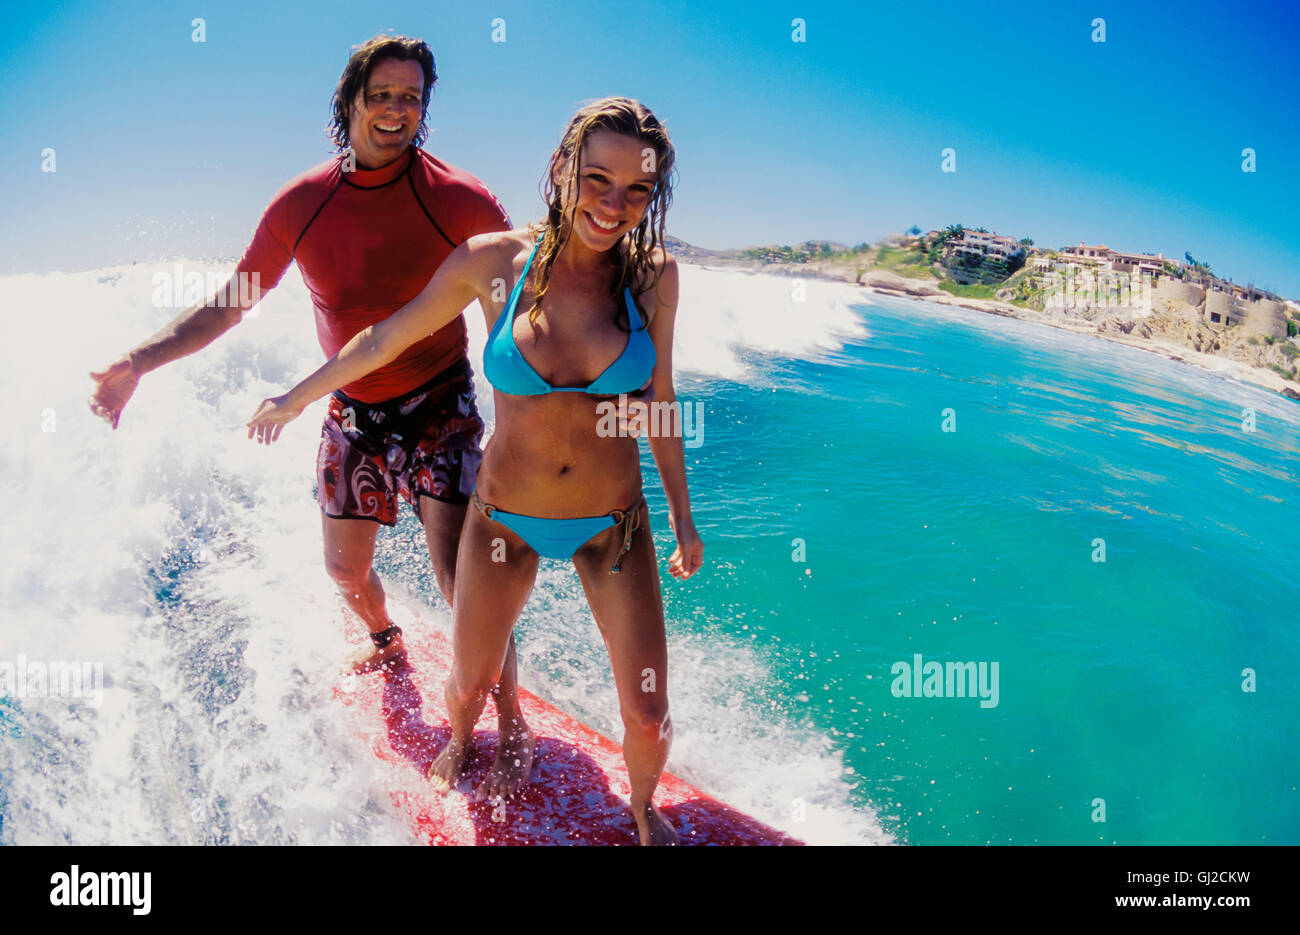 San José del Cabo, Los Cabos, México --- Pareja Tandem Surfing --- Imagen © Mark A. Johnson Foto de stock